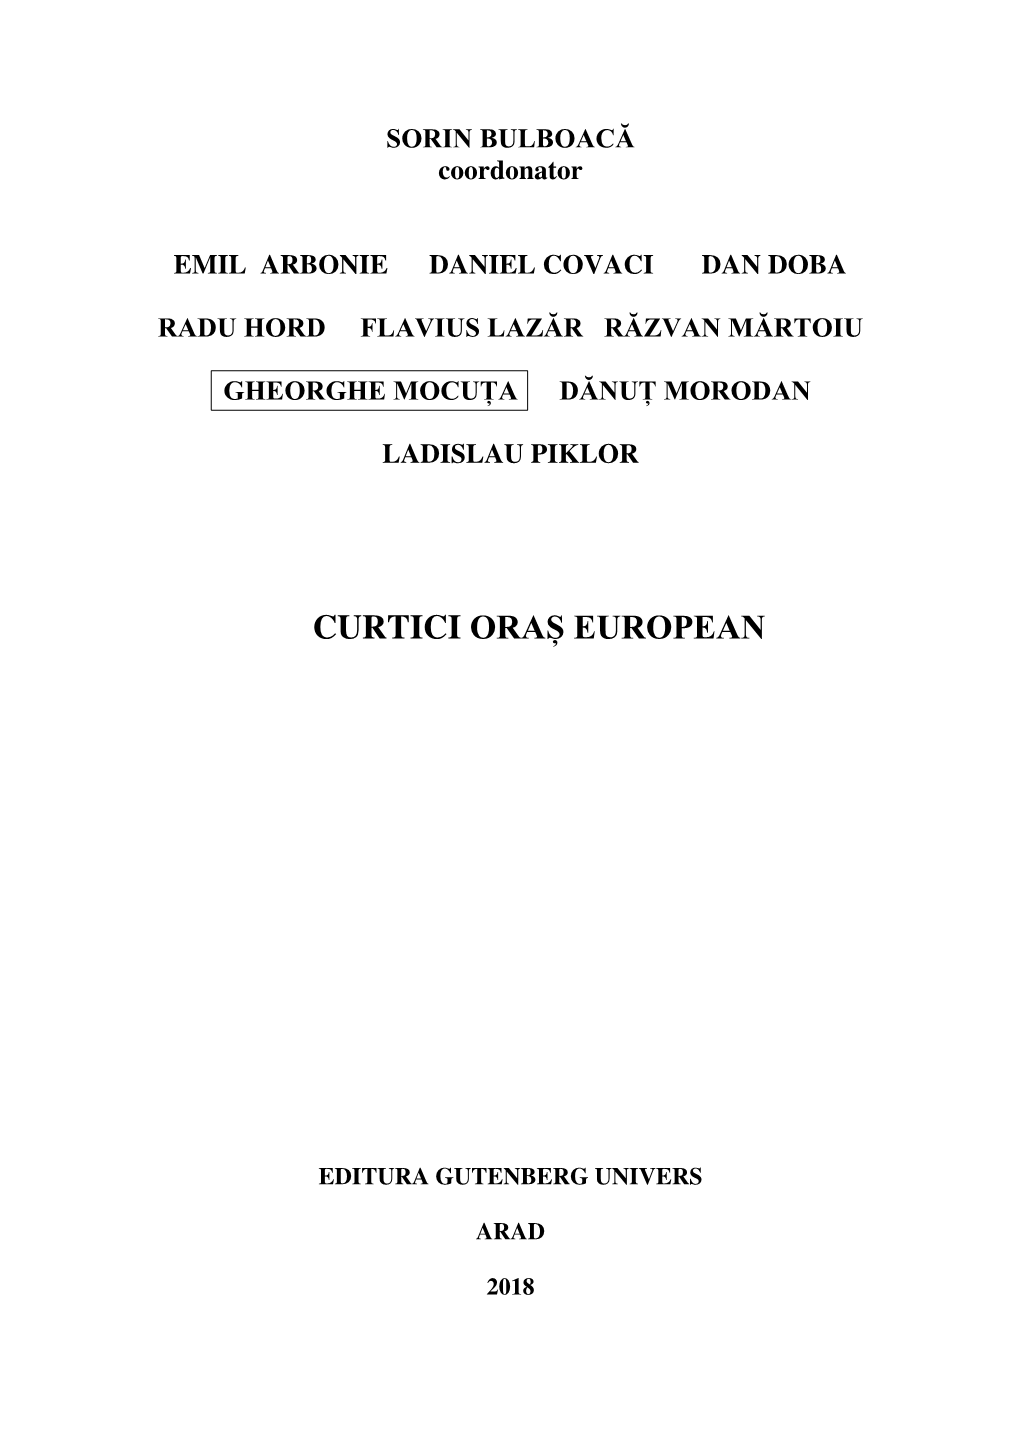 Curtici Oraș European